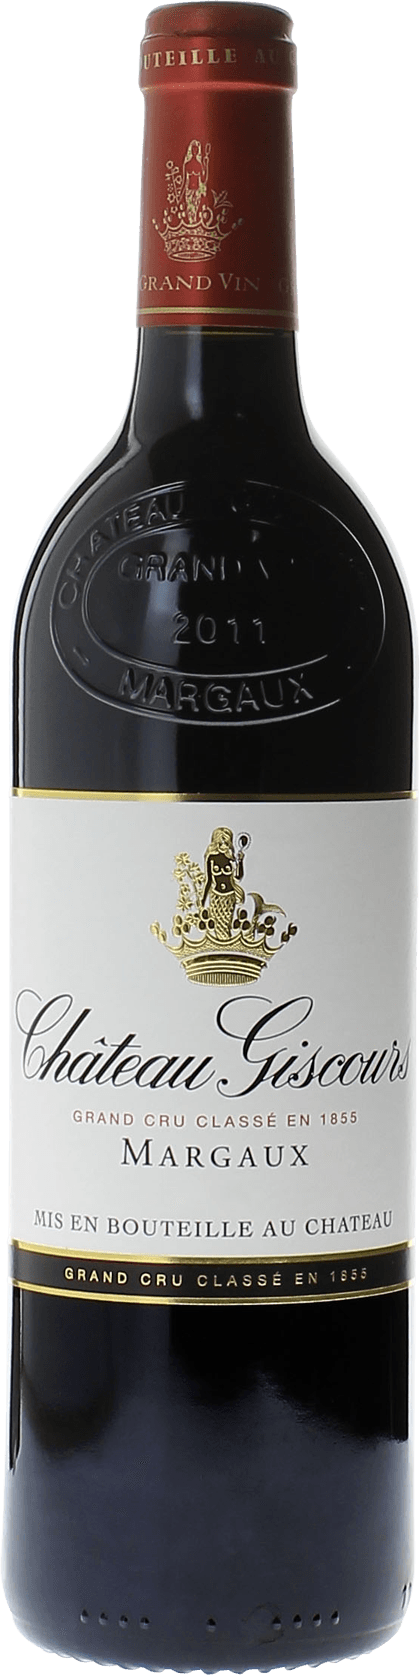 Giscours 2018 3me Grand cru class Margaux, Bordeaux rouge